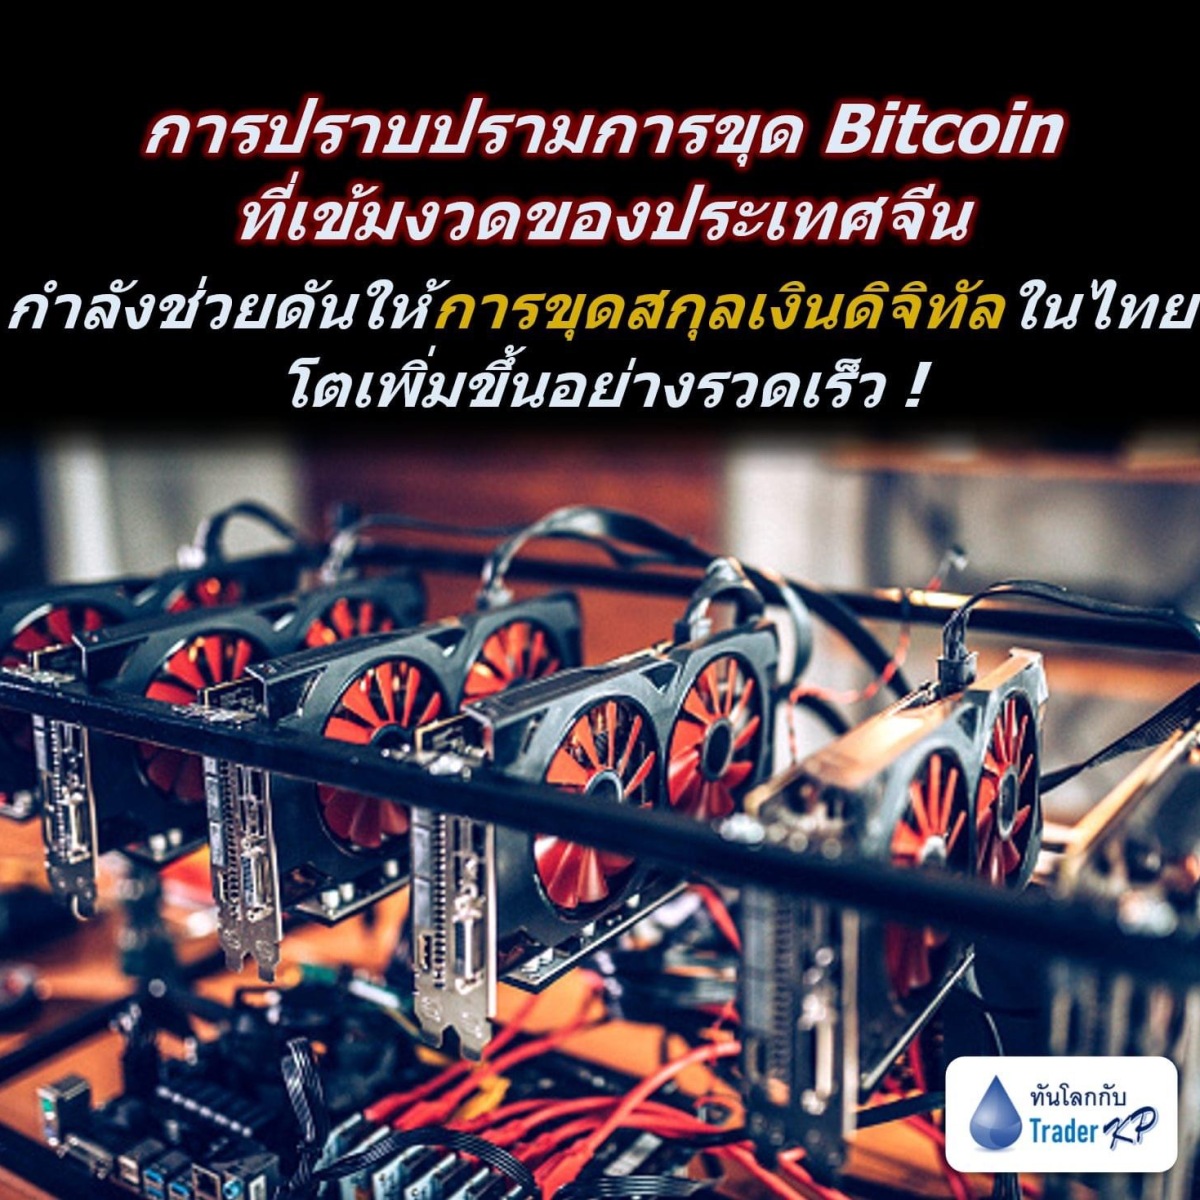 ⚠️[CRYPTO]⚠️ การปราบปรามการขุด Bitcoin ที่เข้มงวดของประเทศจีน กำลังช่วยดันให้การขุดสกุลเงินดิจิทัลในไทยโตเพิ่มขึ้นอย่างรวดเร็ว !